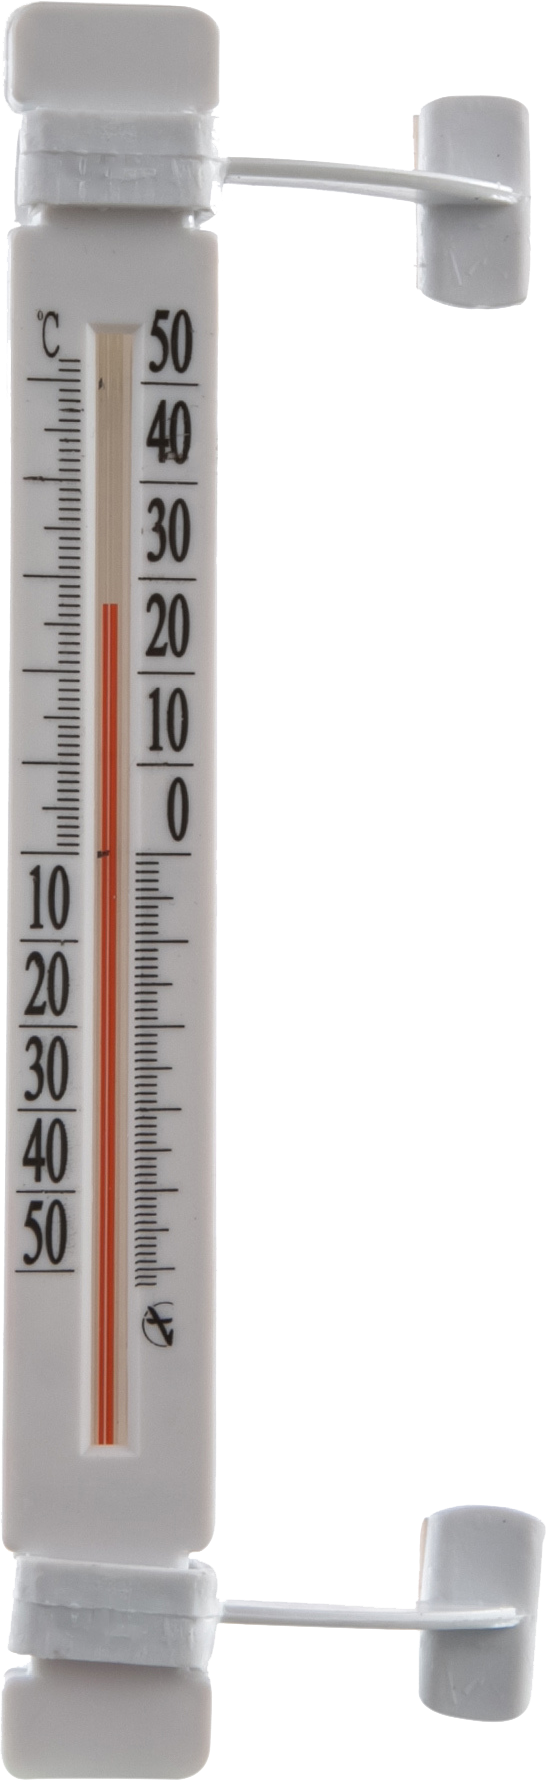 Учимся правильно измерять температуру тела - БУ 